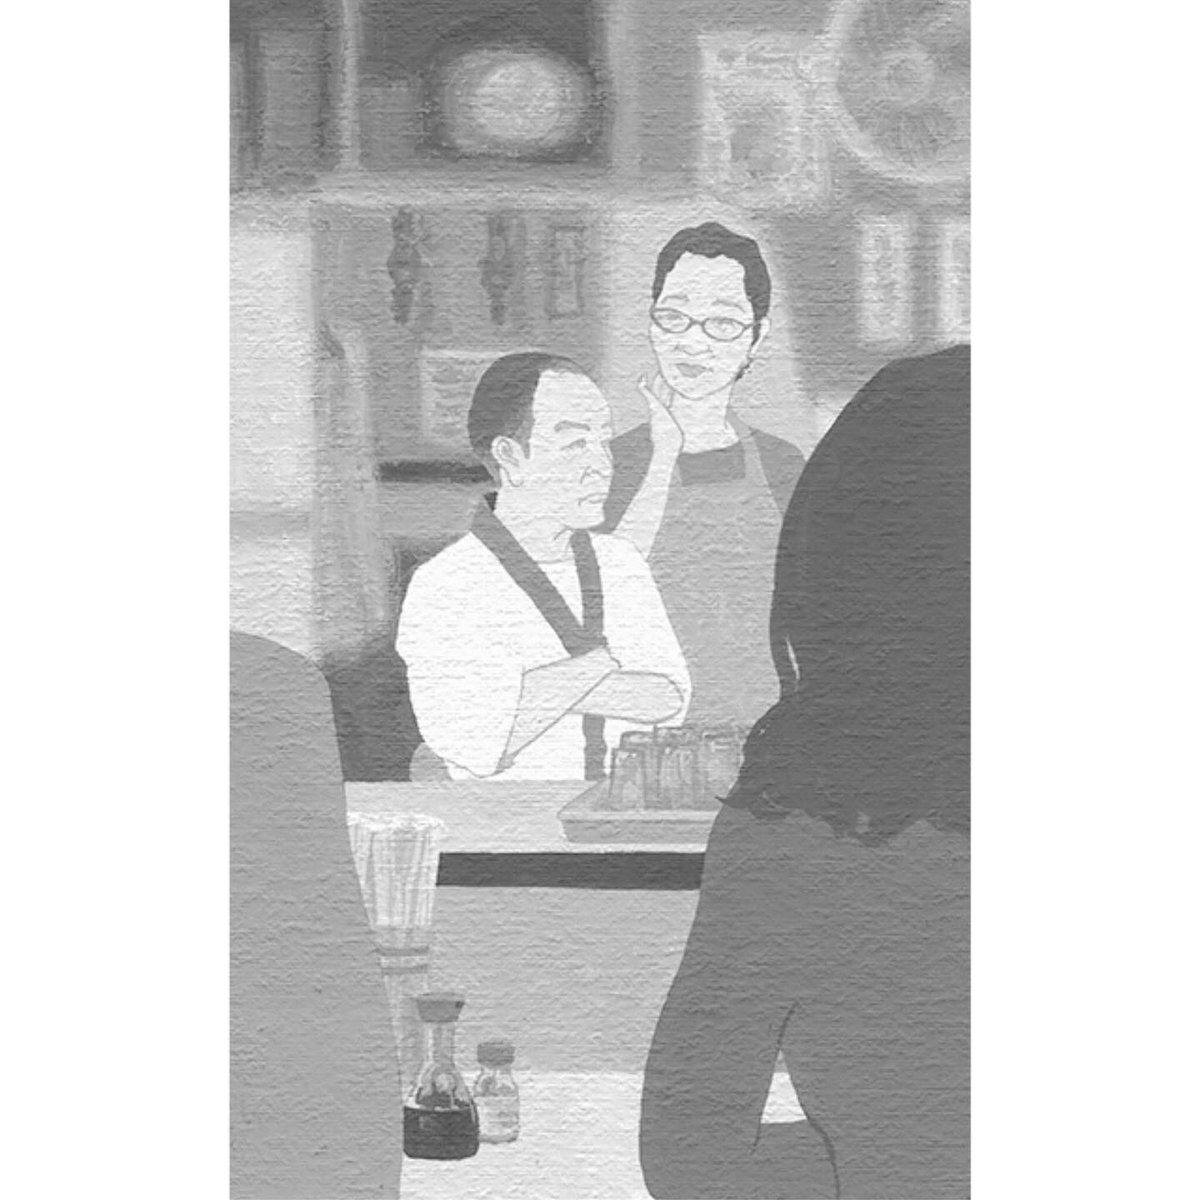 間違えてばかり。ごめんなさい。今度は大丈夫。

双葉社 2022 小説推理 8月号
6月27日発売!

新連載
「あじろ」
赤松 利市/著
扉絵を描かせて頂きました。 